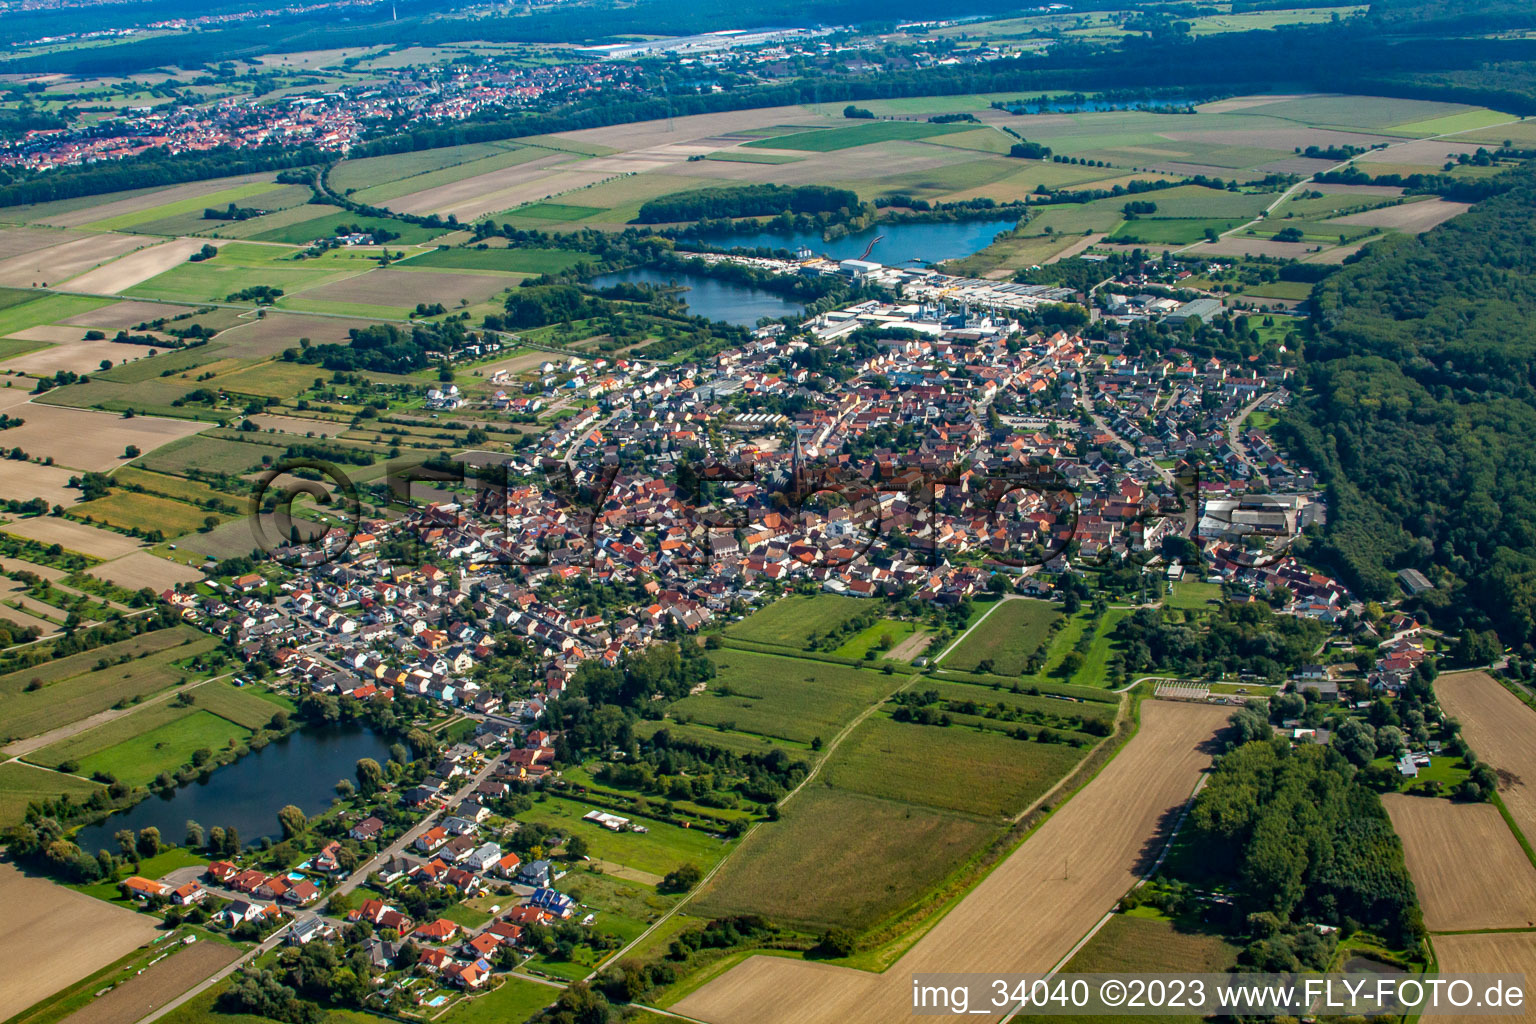 Vue aérienne de De l'ouest à le quartier Rheinsheim in Philippsburg dans le département Bade-Wurtemberg, Allemagne